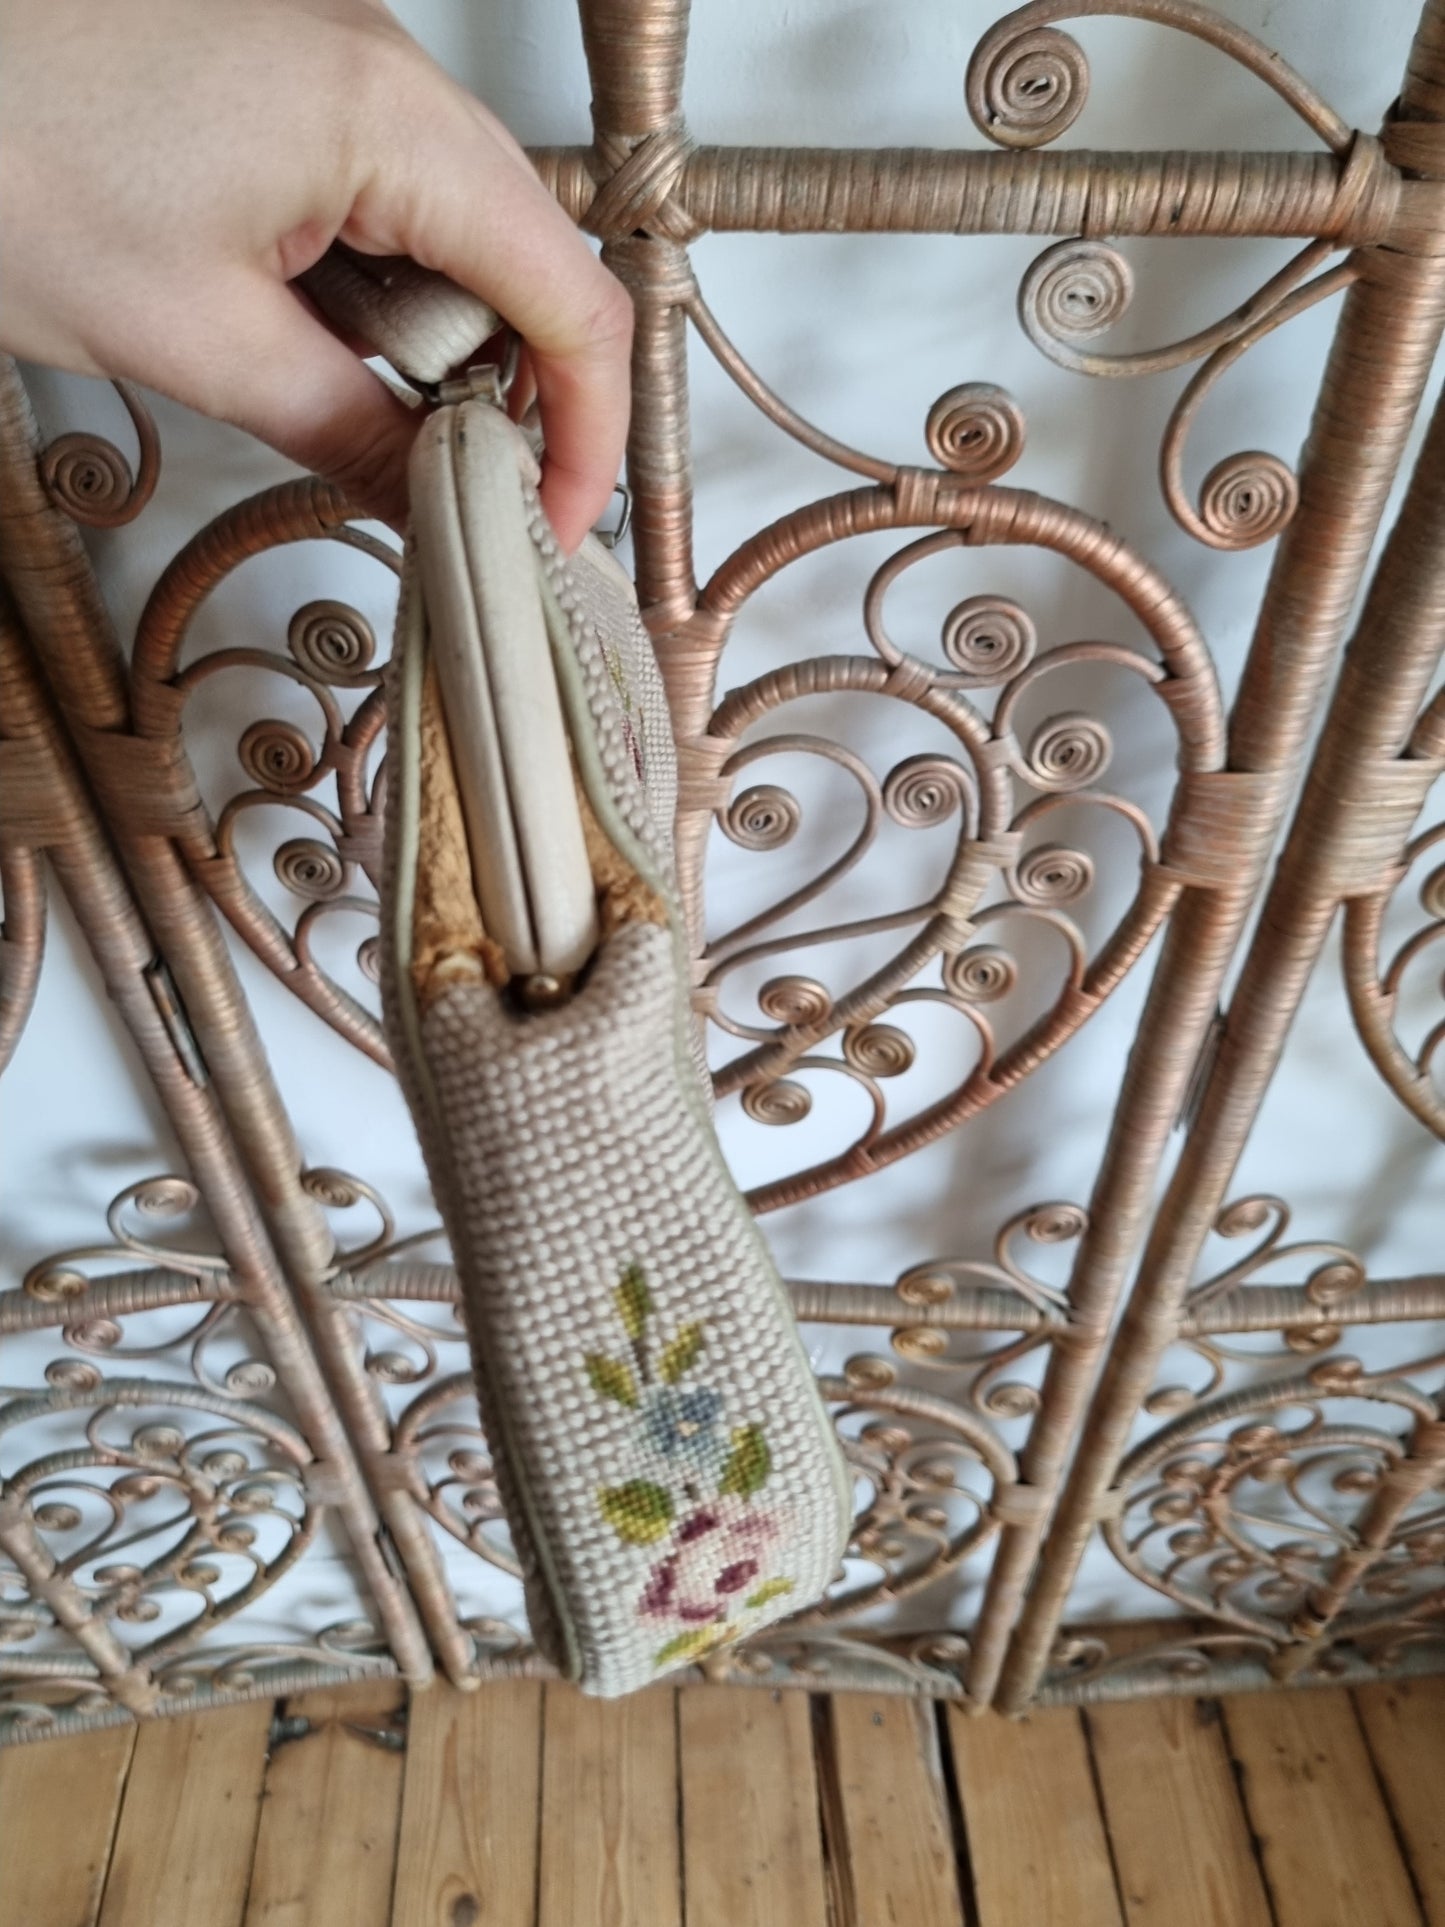 Vintage tapestry carpet 60s purse hand bag